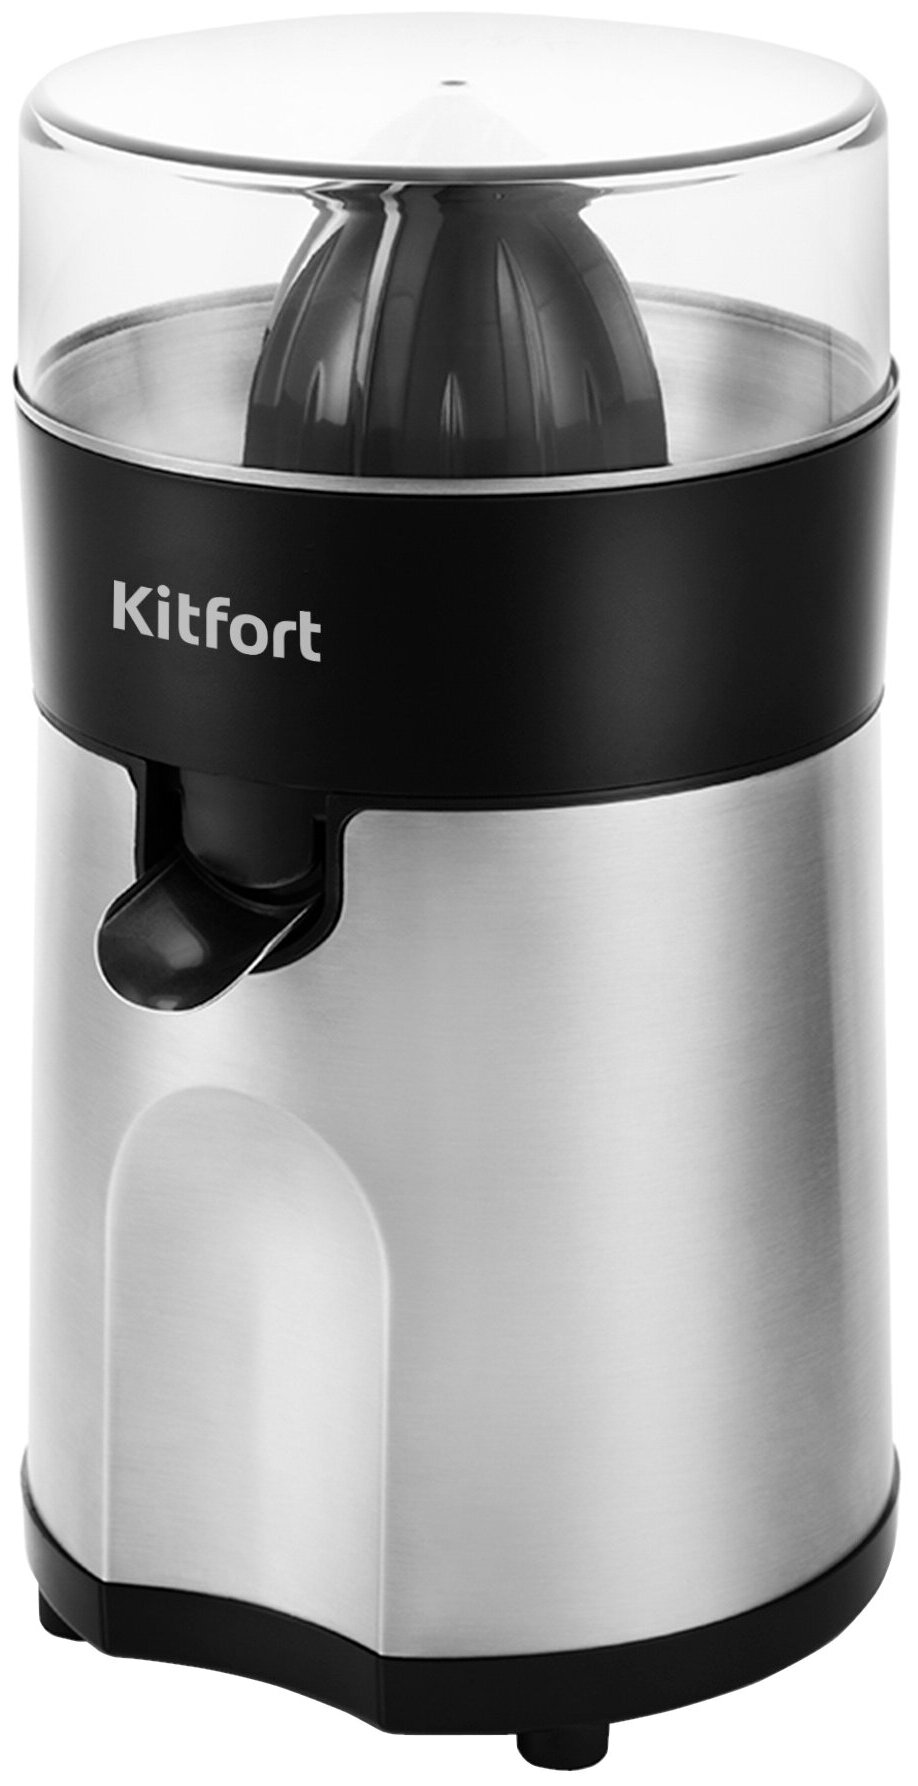  Kitfort KT-1113